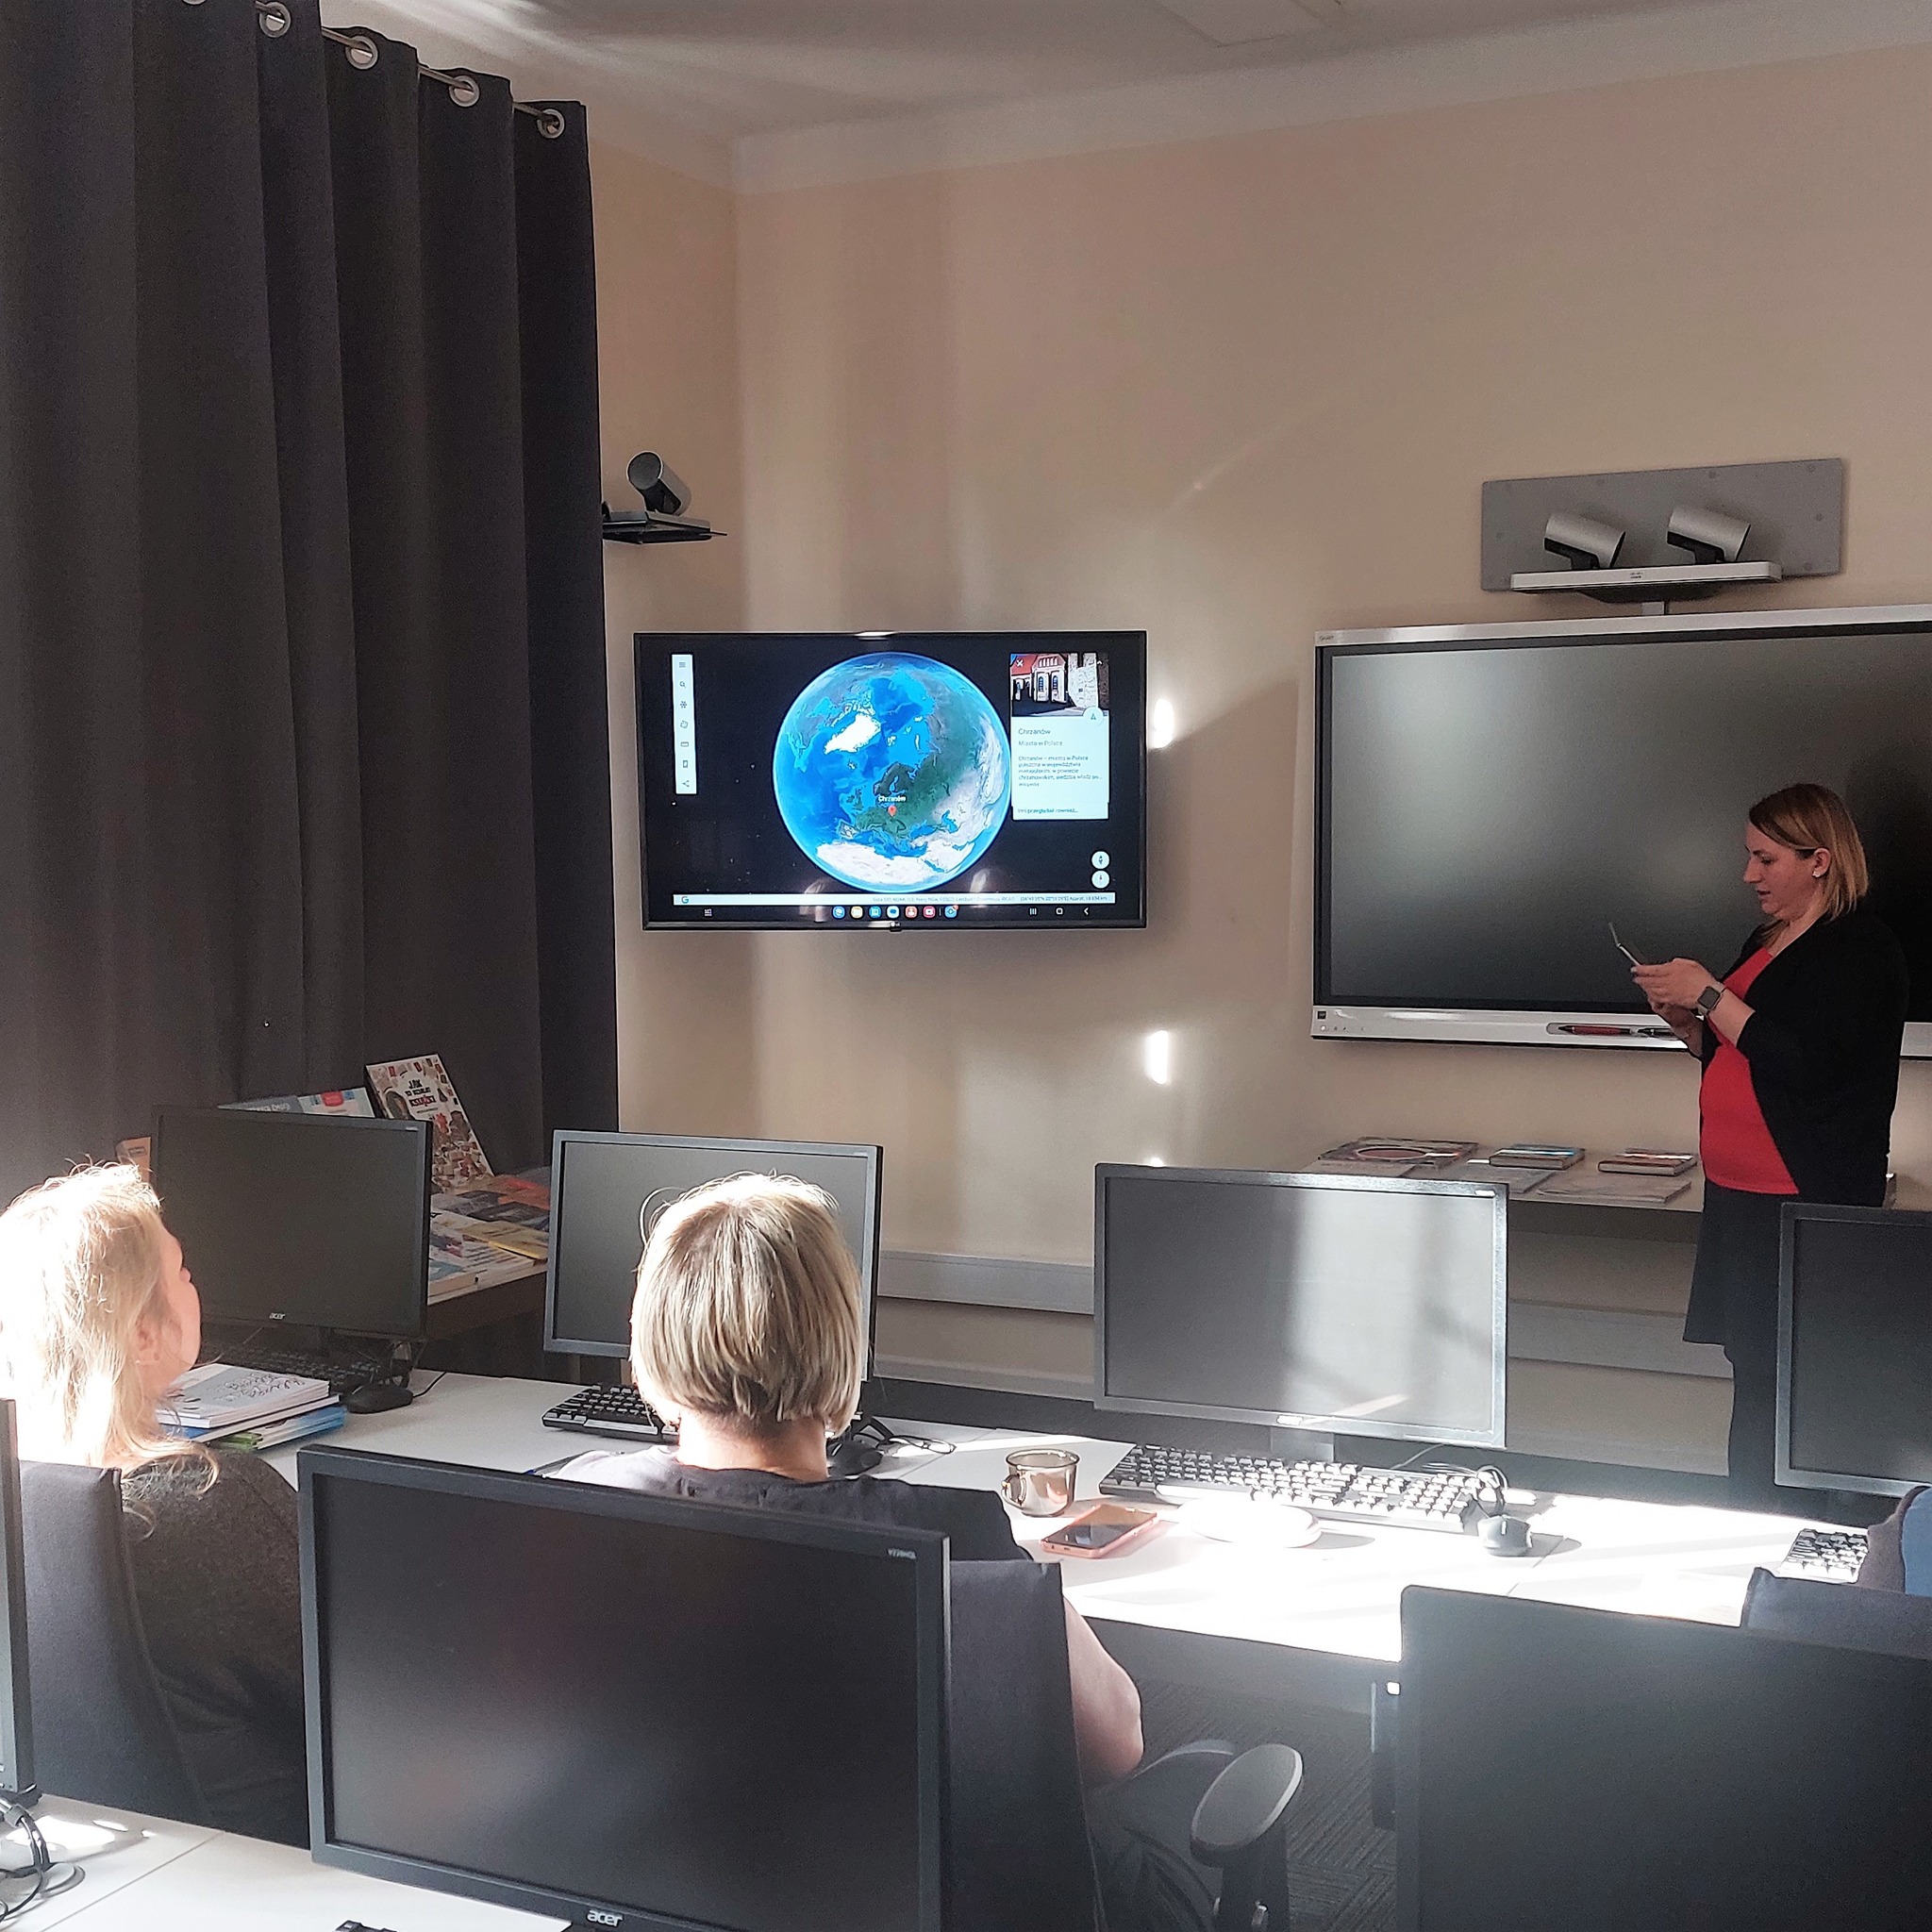 widok sali z osobami siedzącymi przy komputerach oglądających na ekranie telewizora aplikacje z rozszerzoną rzeczywistością